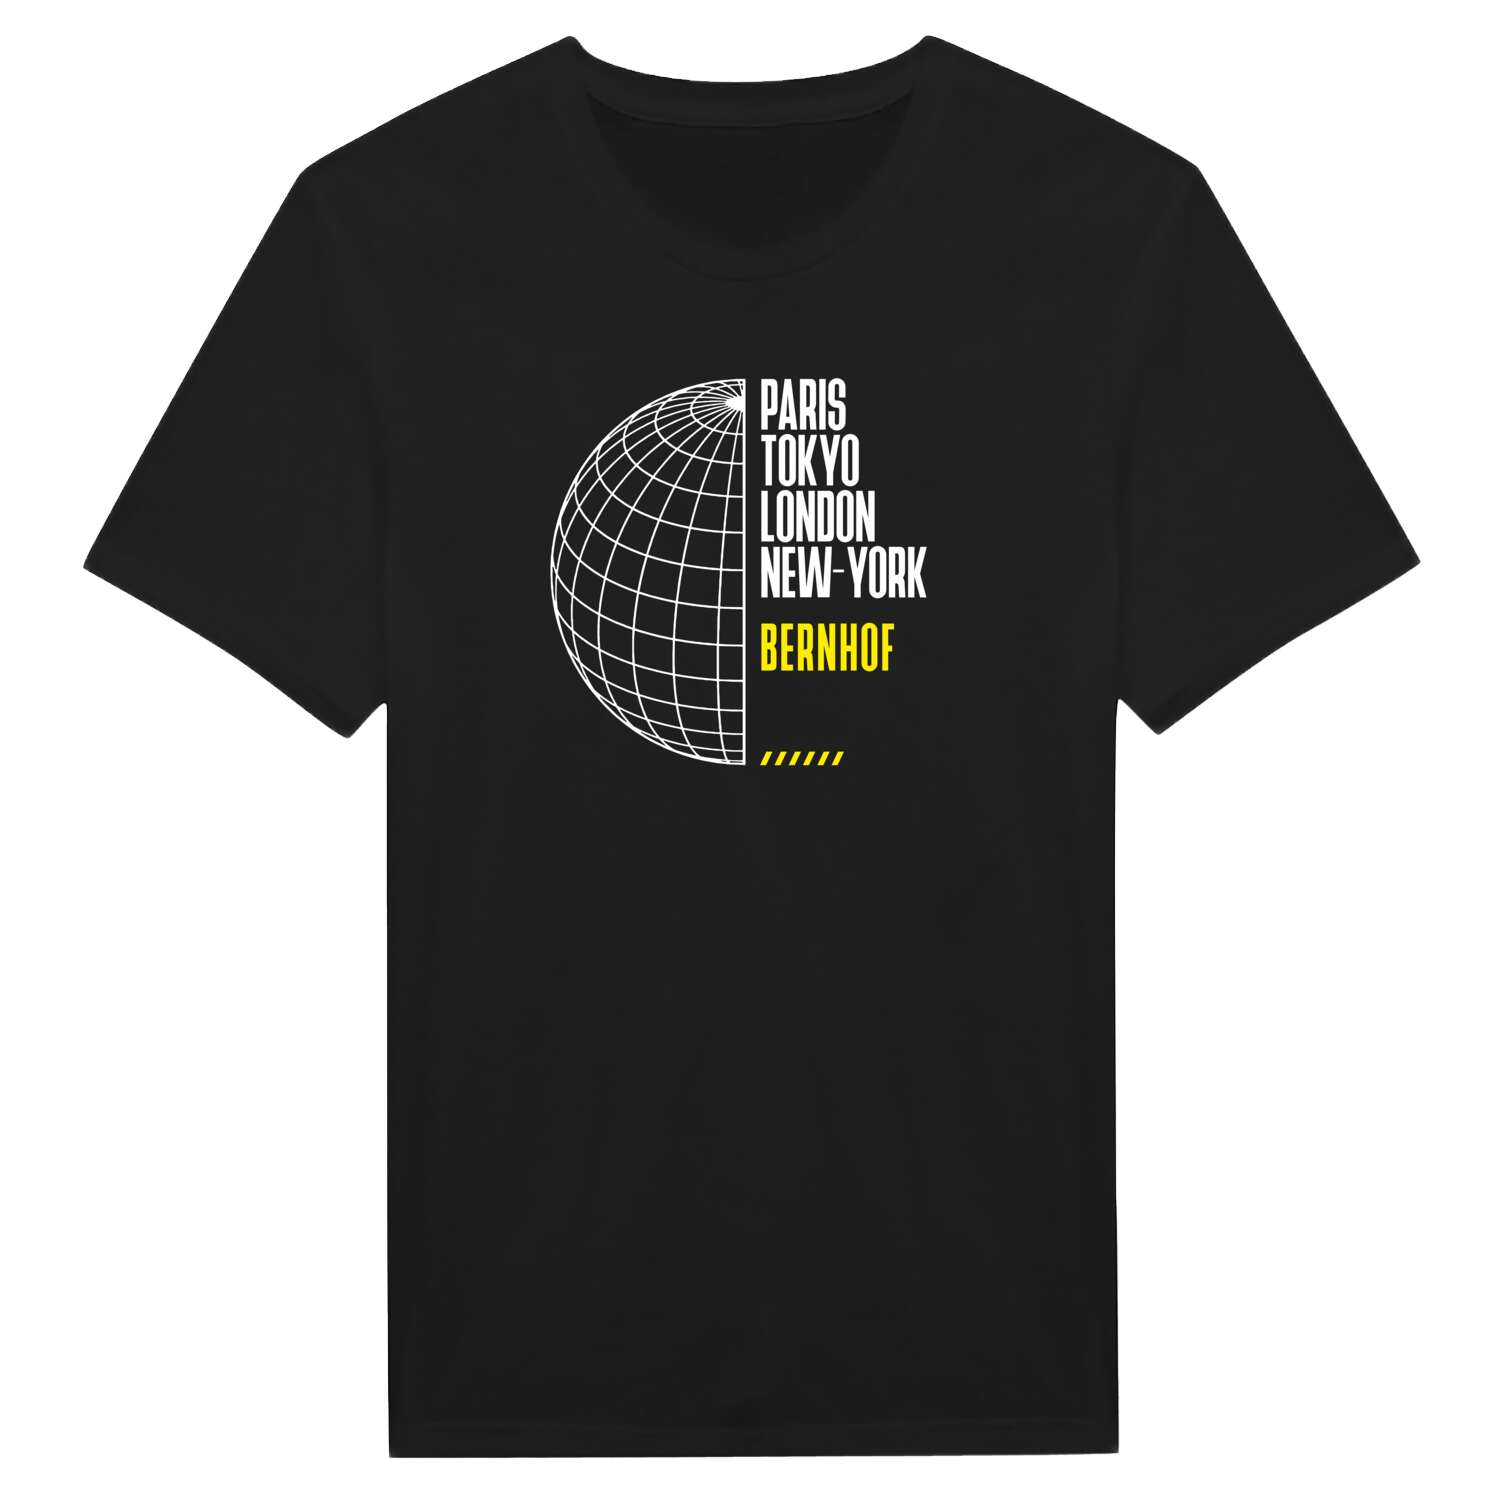 Bernhof T-Shirt »Paris Tokyo London«